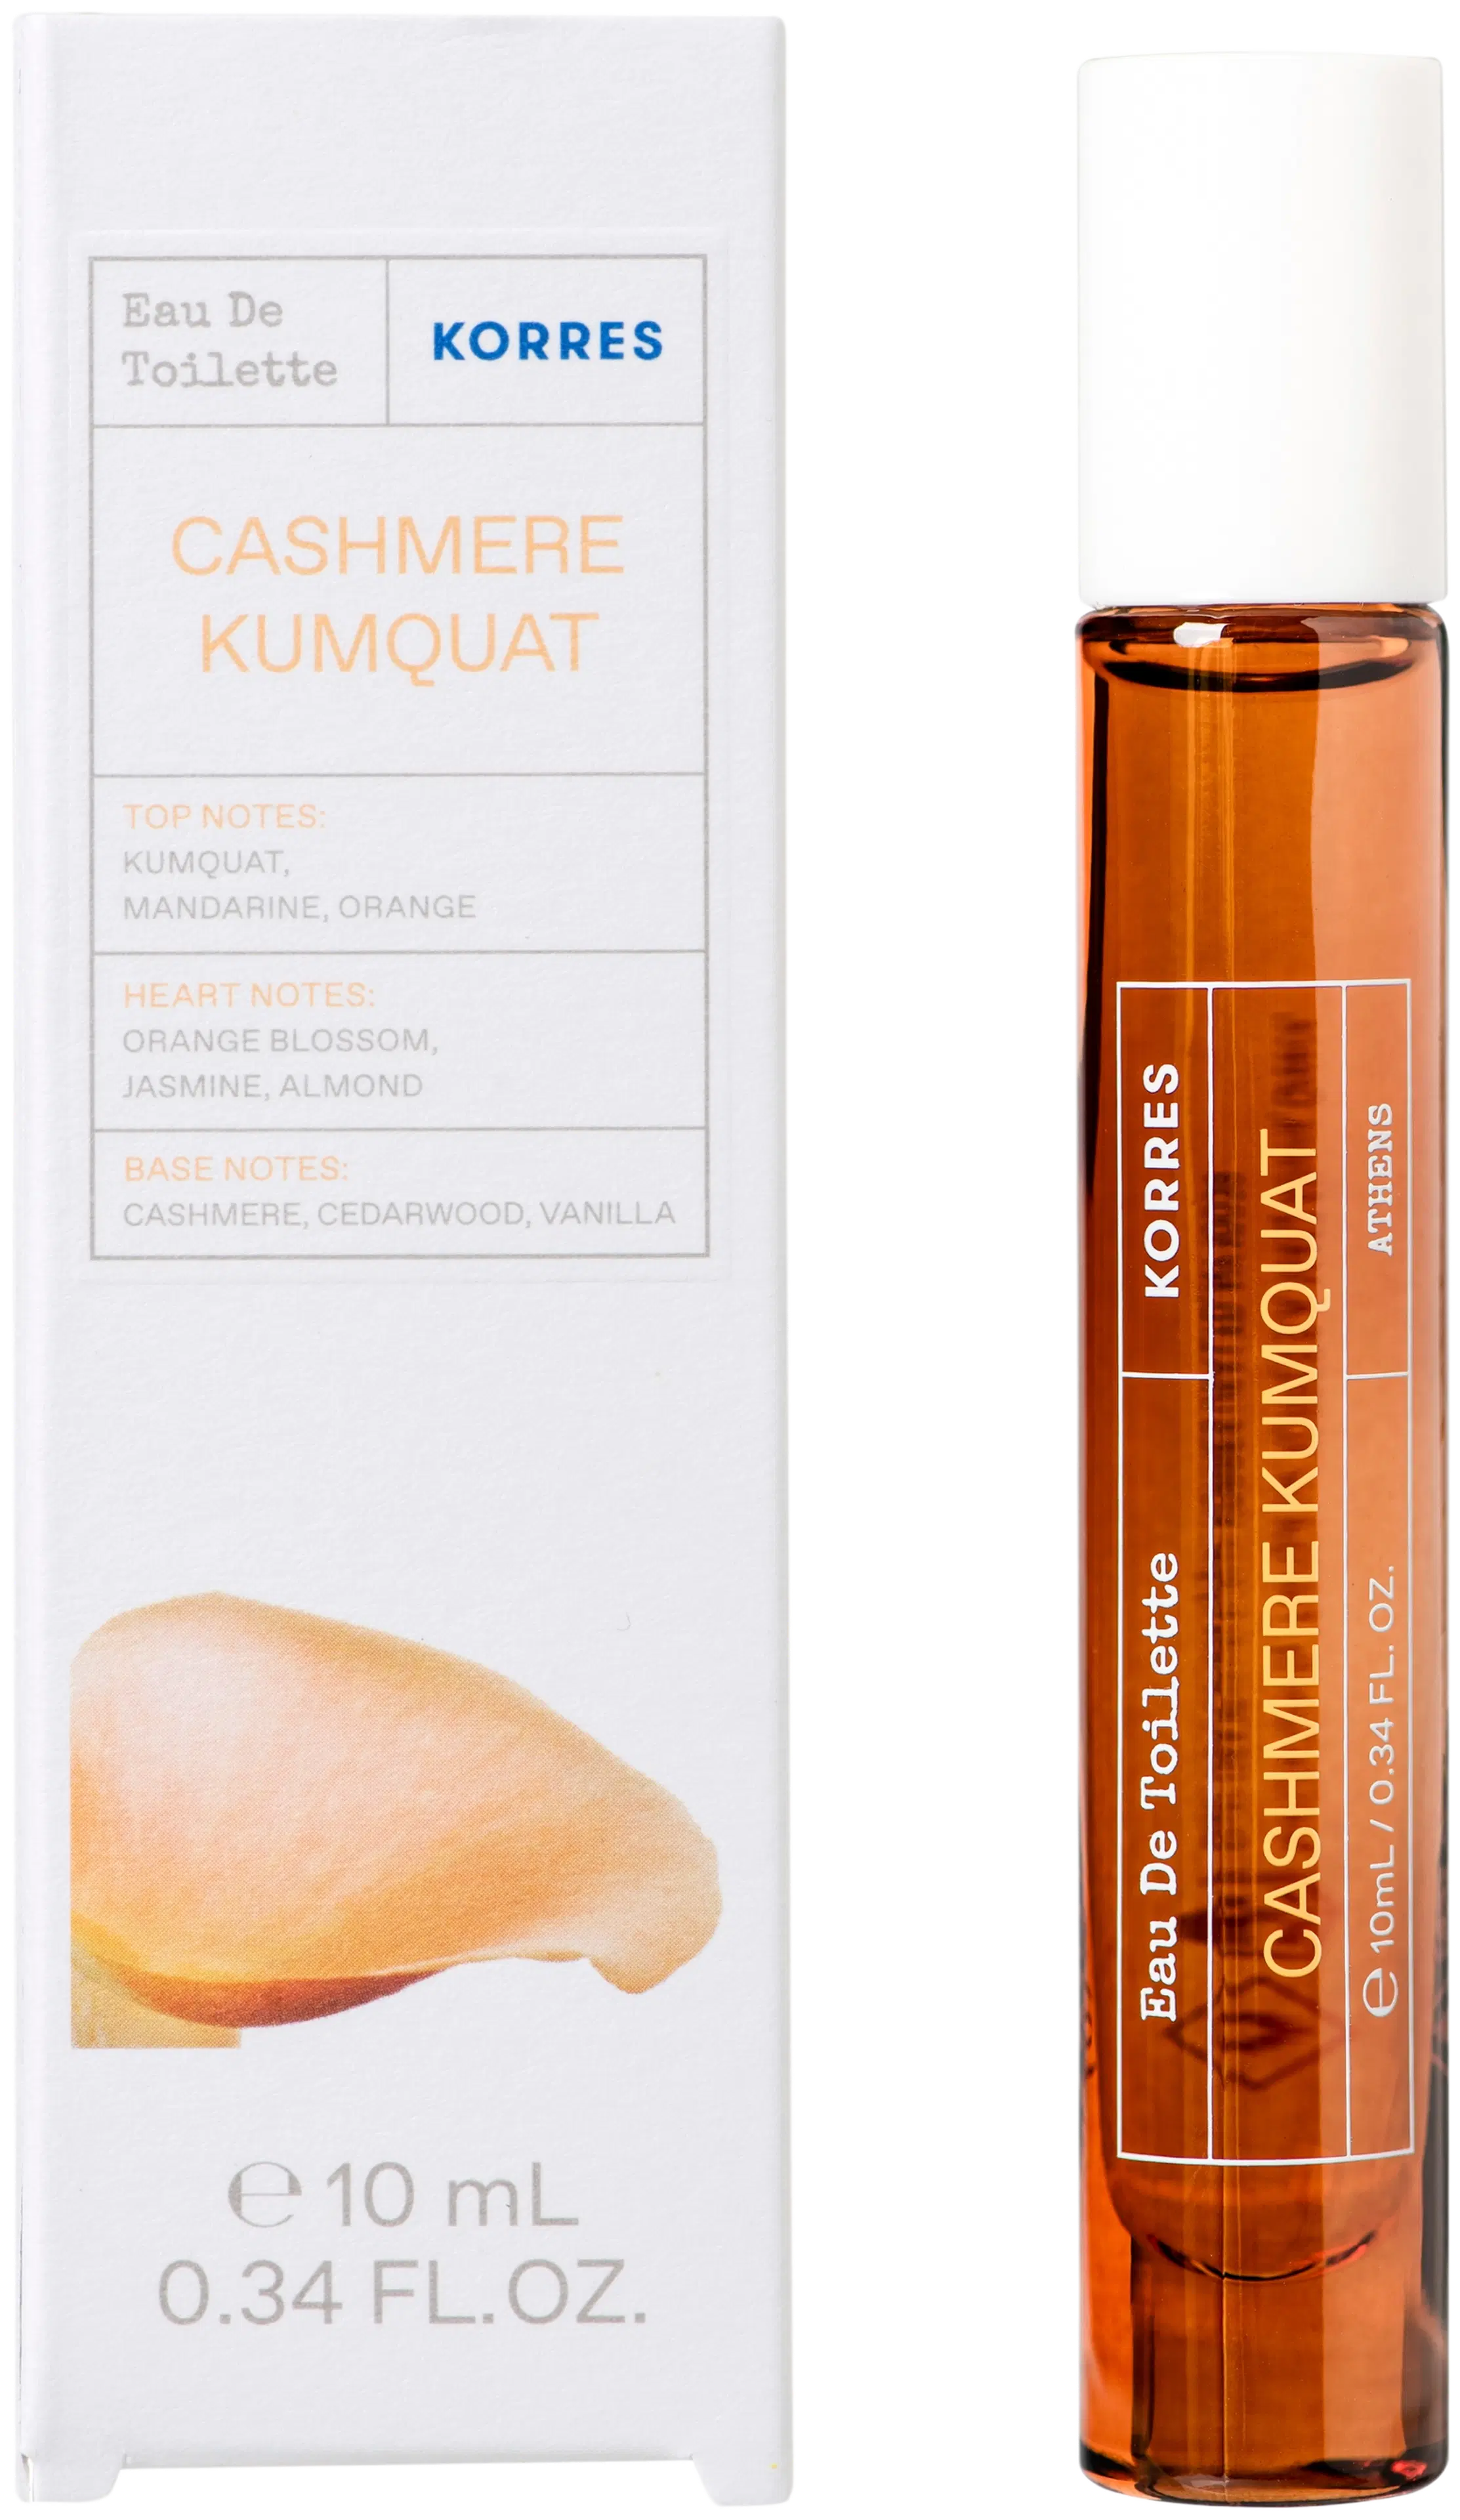 KORRES Cashmere Kumquat EdT roll-on tuoksu 10 ml